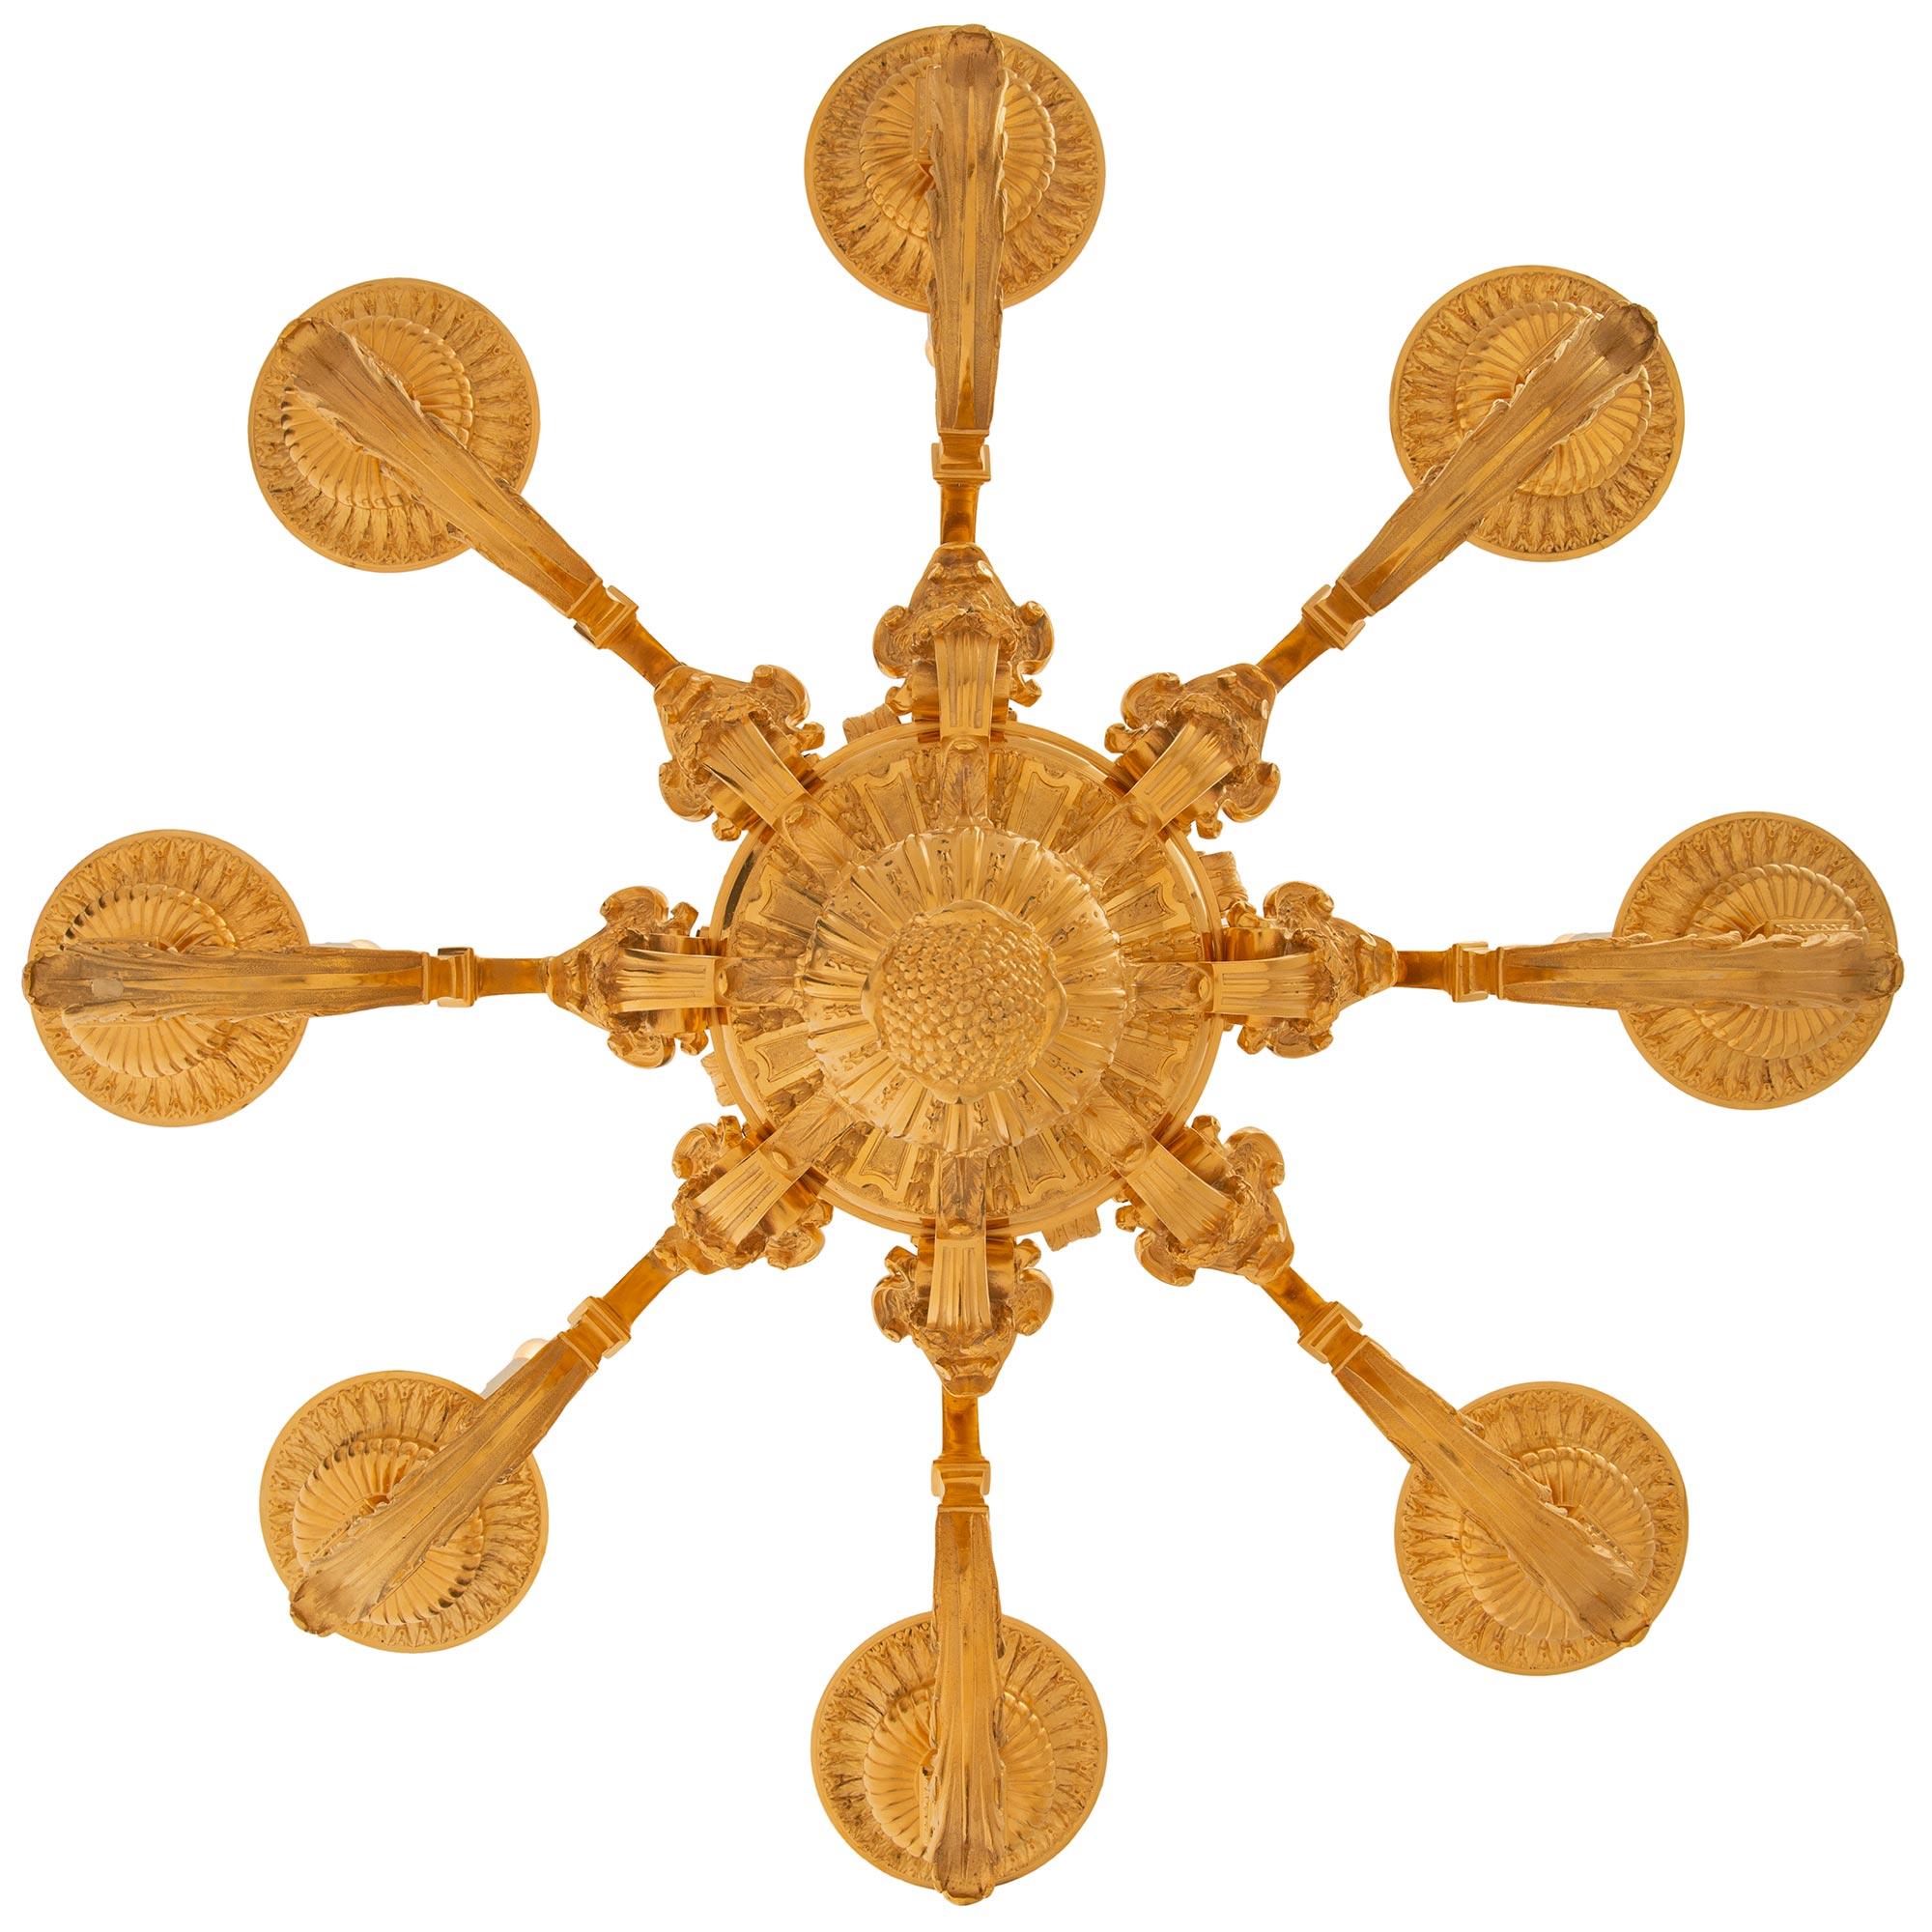 Magnifique lustre en bronze doré de style Louis XIV du XIXe siècle. Le lustre à huit branches est centré par un remarquable fleuron en forme de gland à feuillage inversé, situé au-dessous de motifs cannelés à partir desquels les branches se